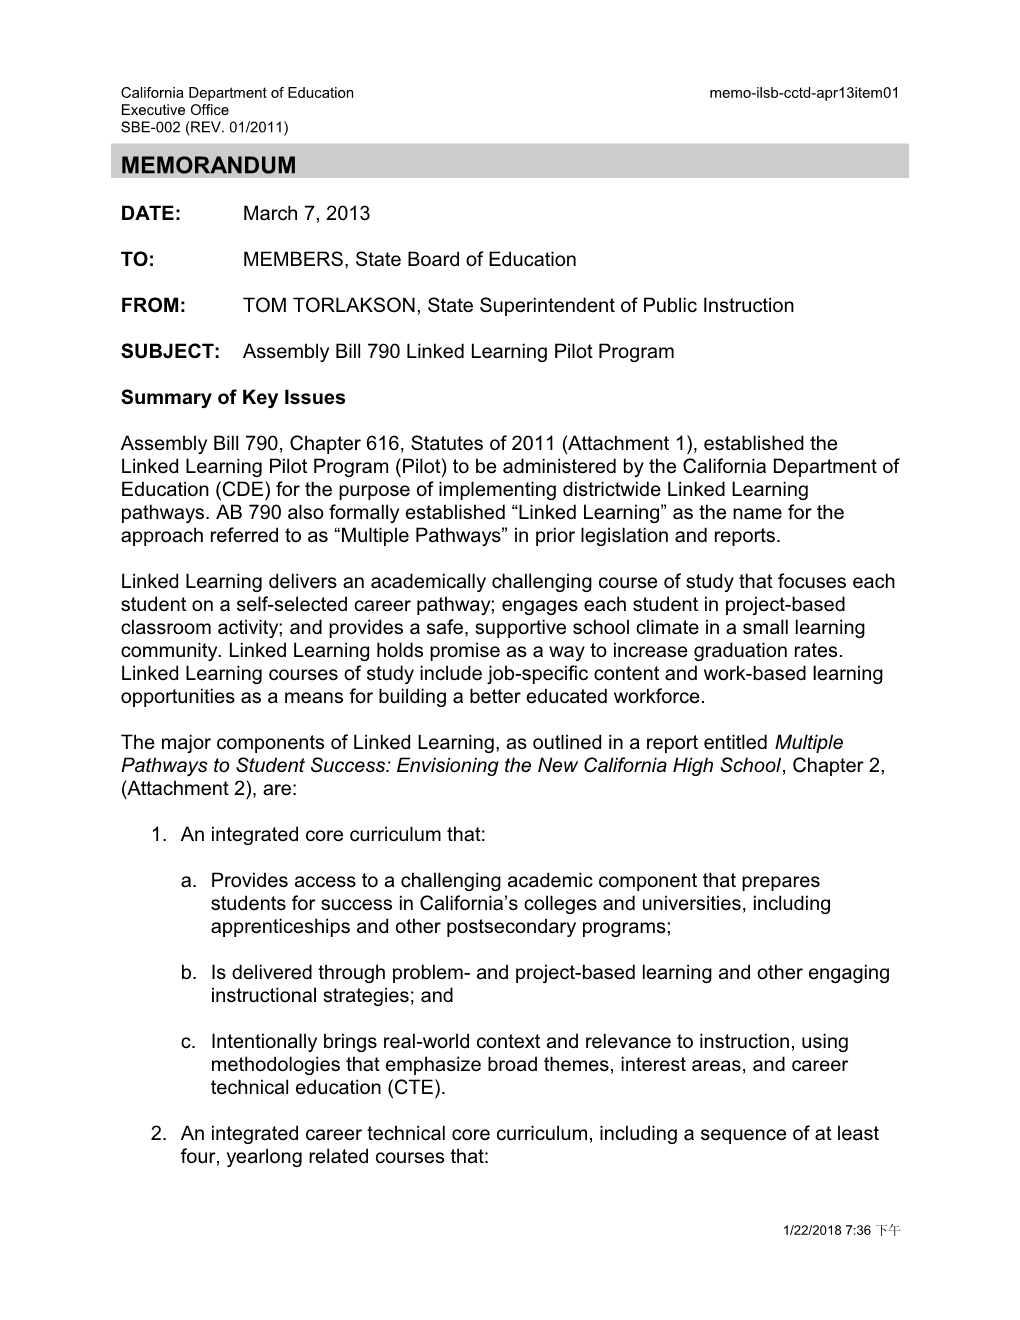 April 2013 Memorandum Item 1 - Information Memorandum (CA State Board of Education)